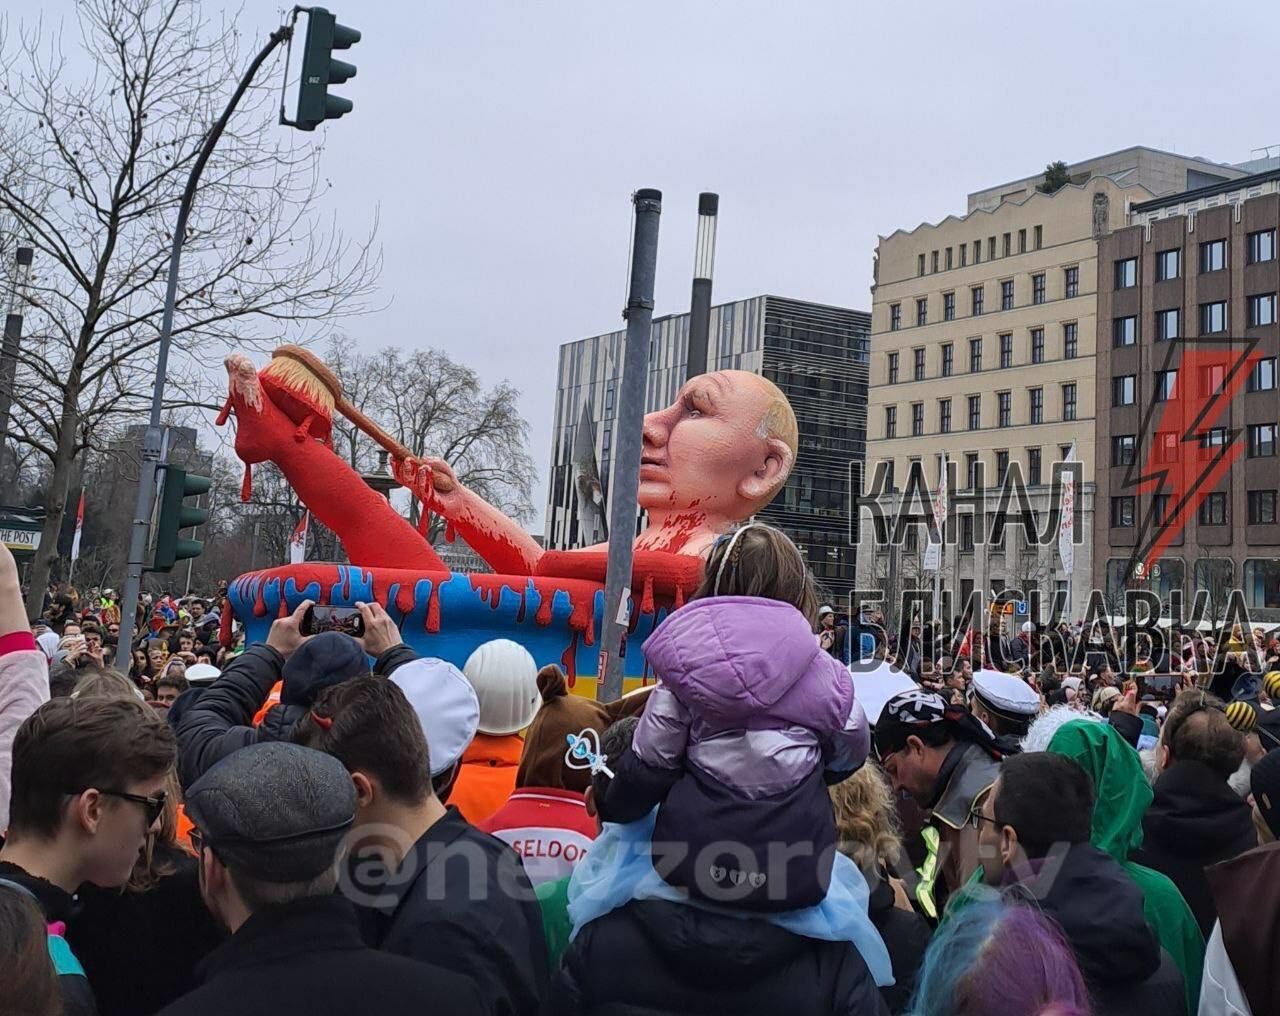 Диктатор смешон: в Германии и Бельгии тоже прошли карнавалы с Путиным в разных позах  – видео